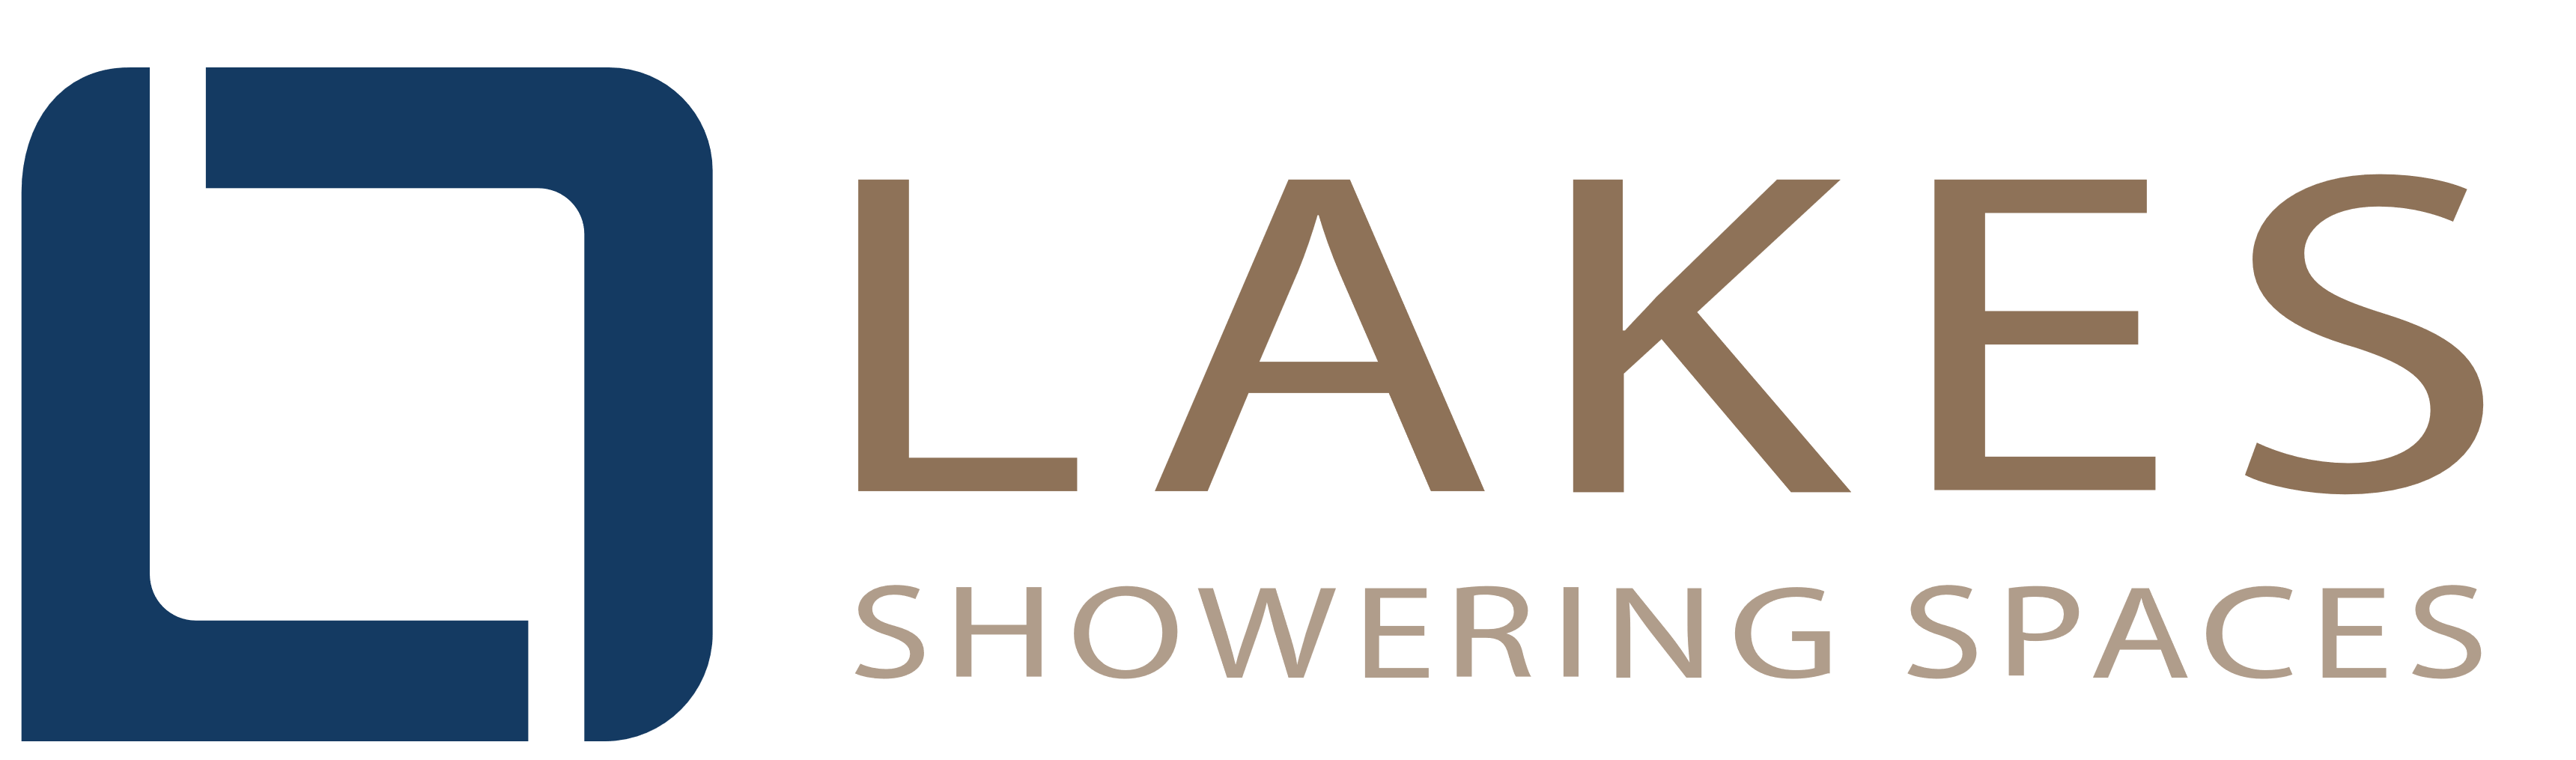 Lakes bathrooms logo